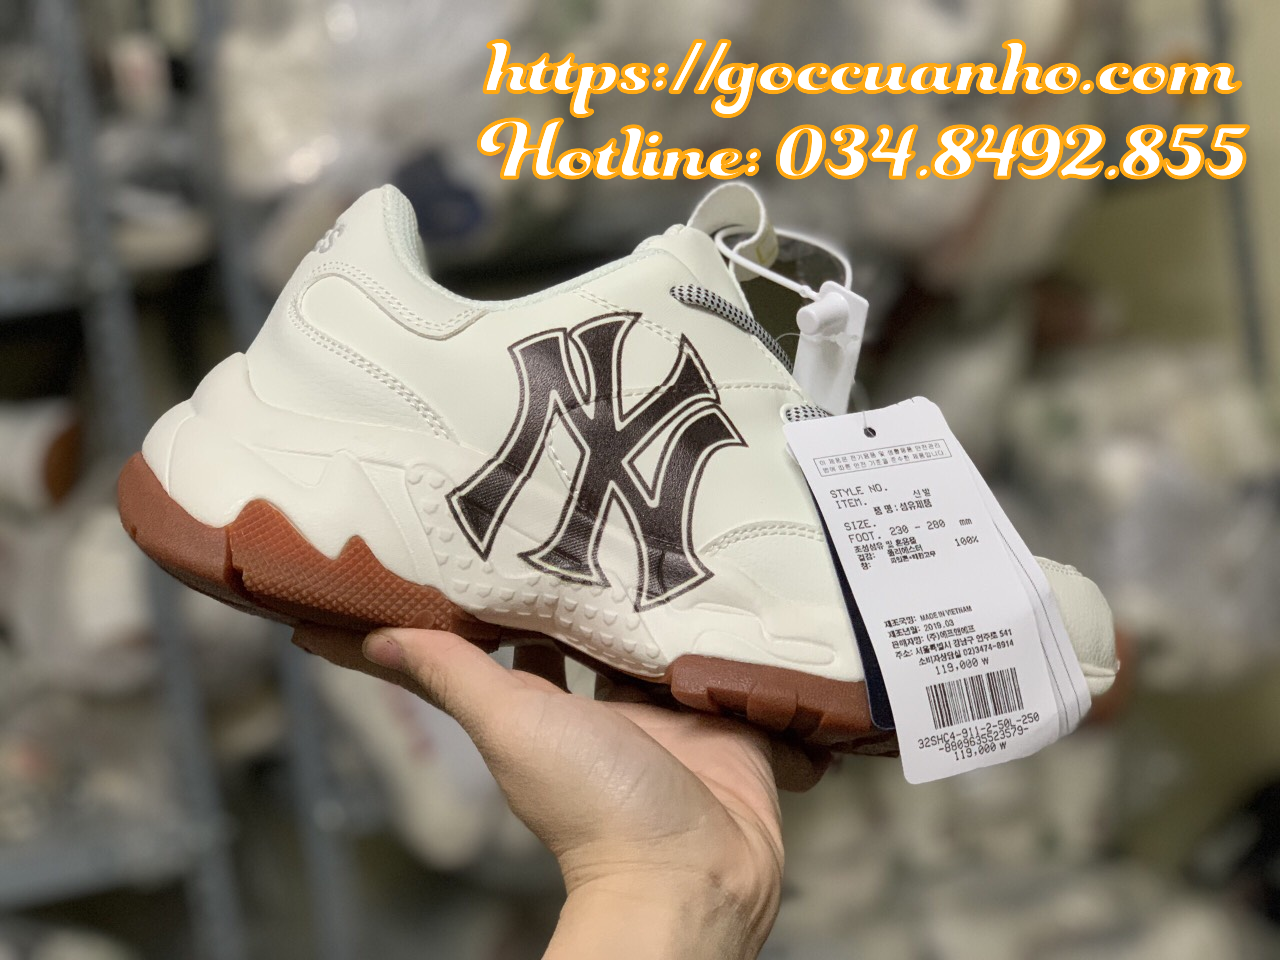 1 CHUYÊN SỈ giày sneaker MLB New York Monogram giá rẻ tại tphcm